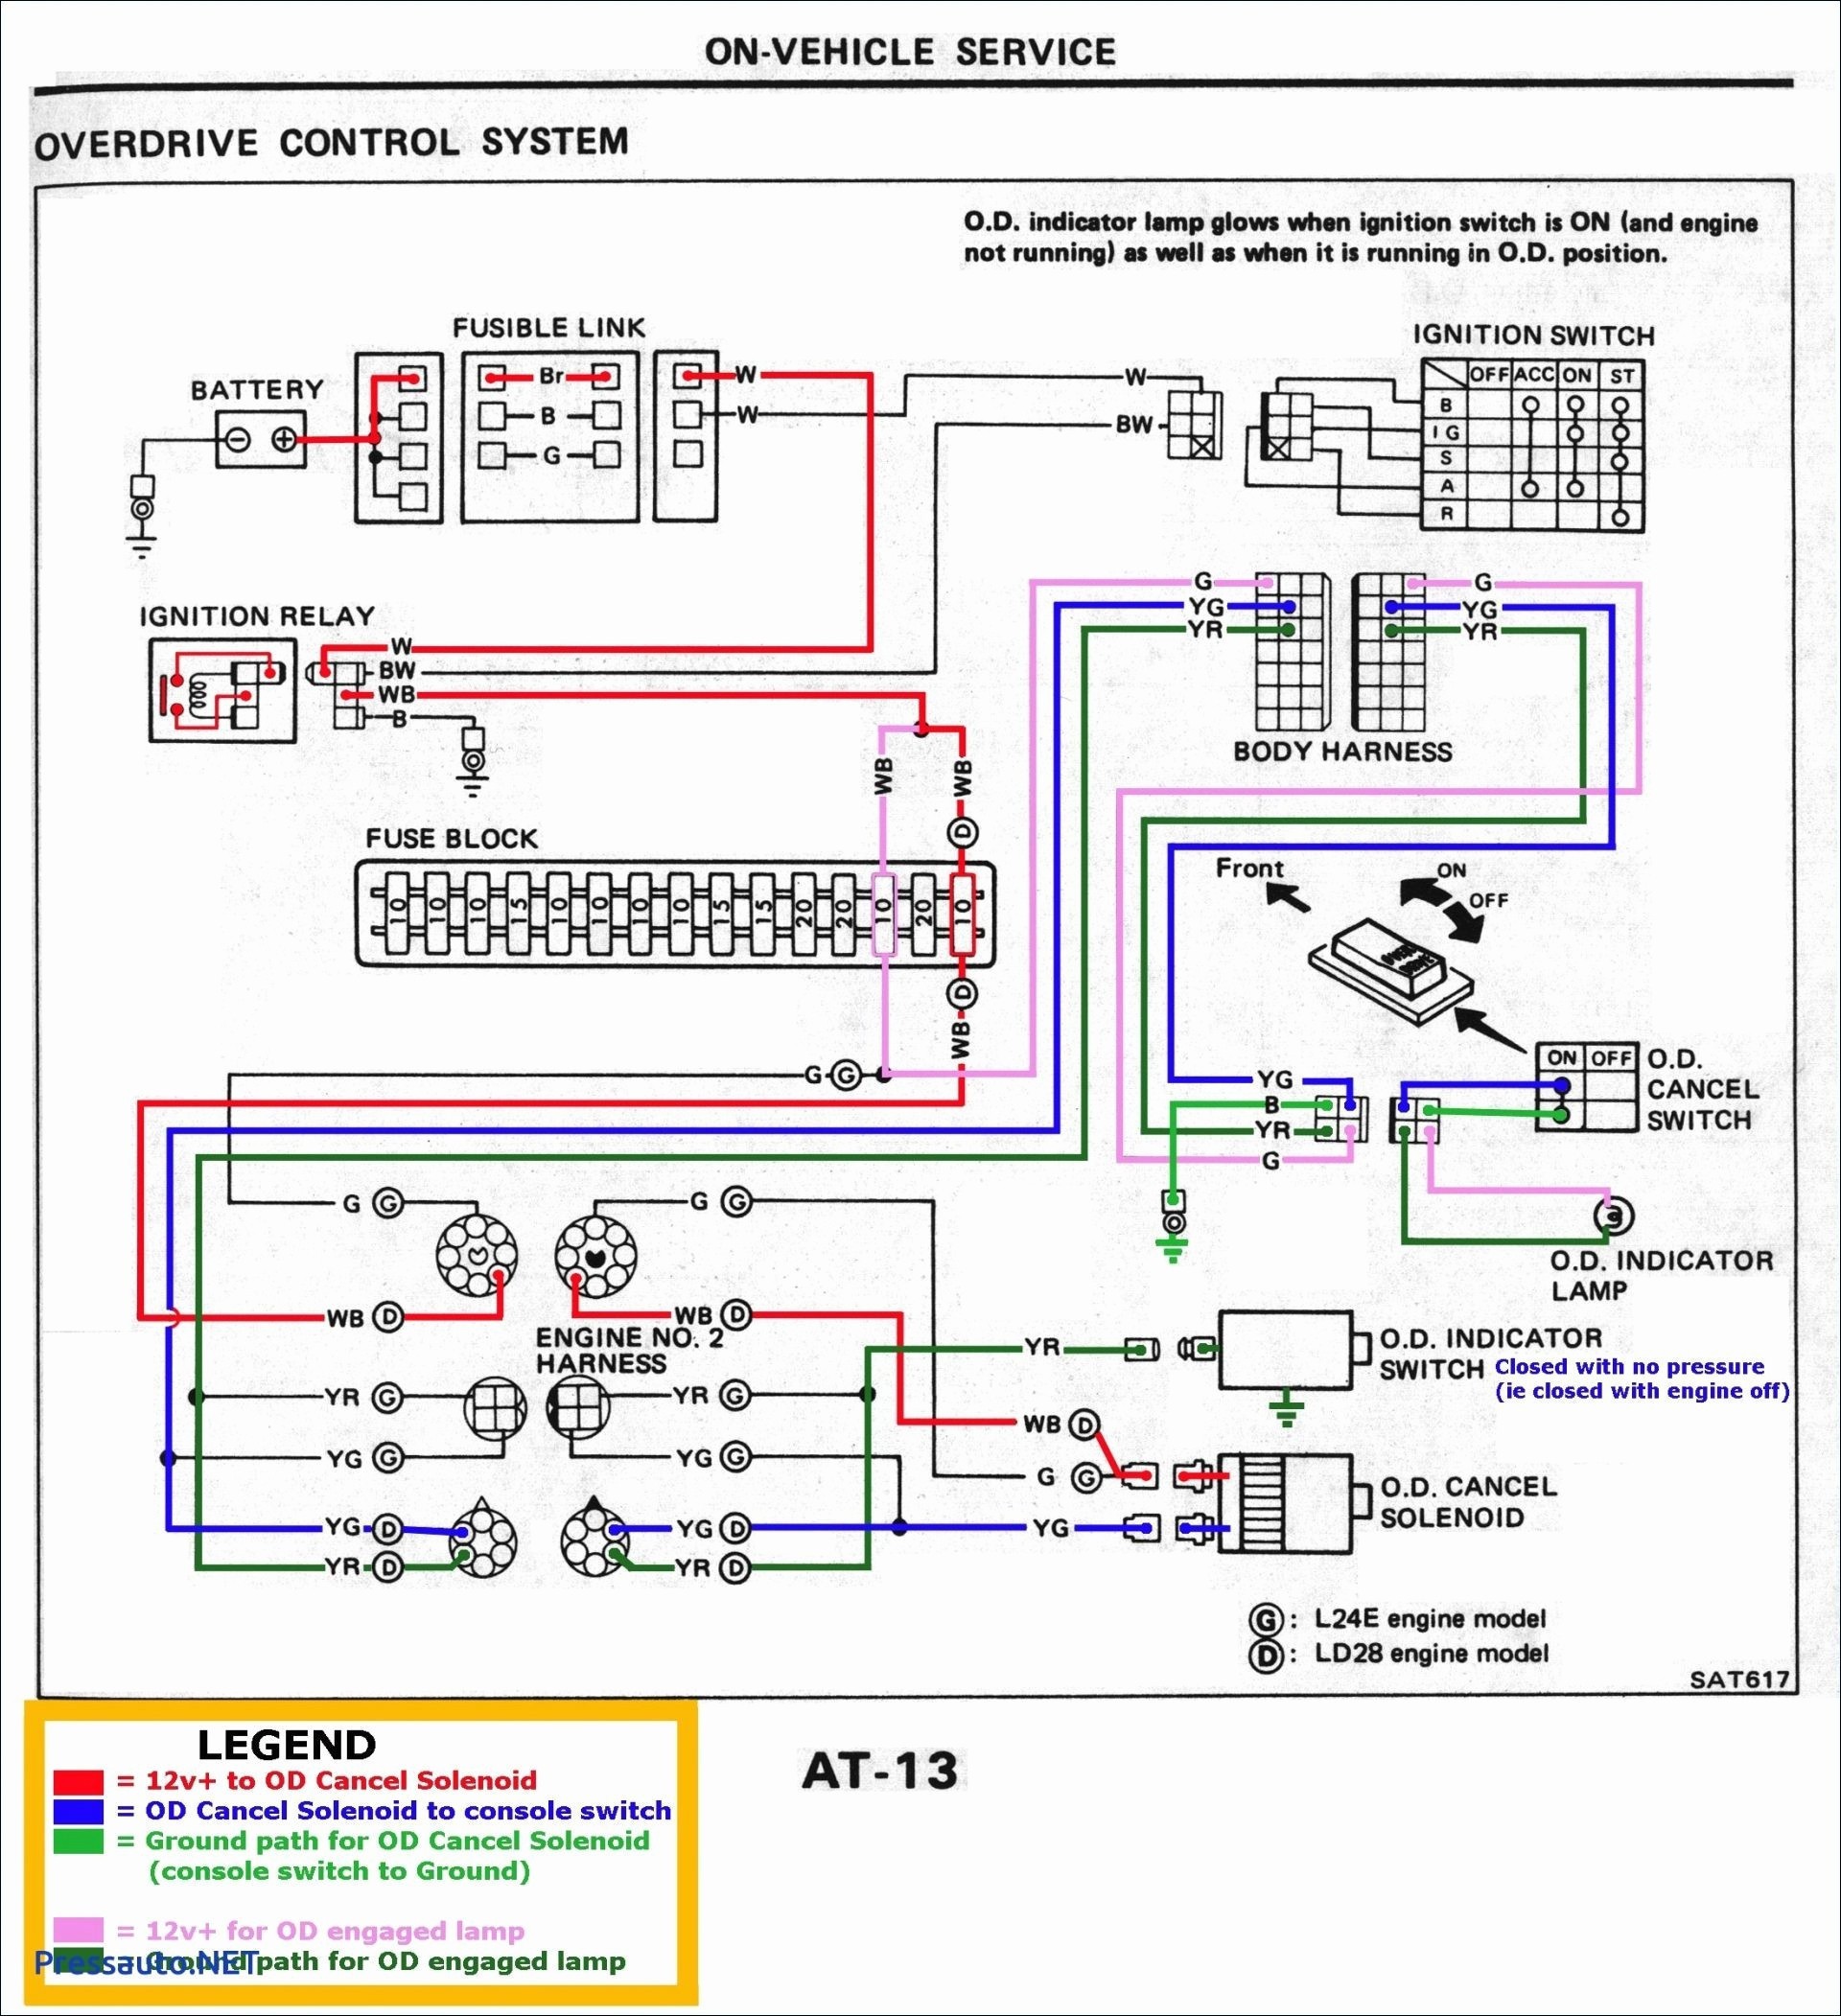 1966 Mustang Wiring Diagram 122s Wiring Diagram Data Wiring Diagrams • Of 1966 Mustang Wiring Diagram